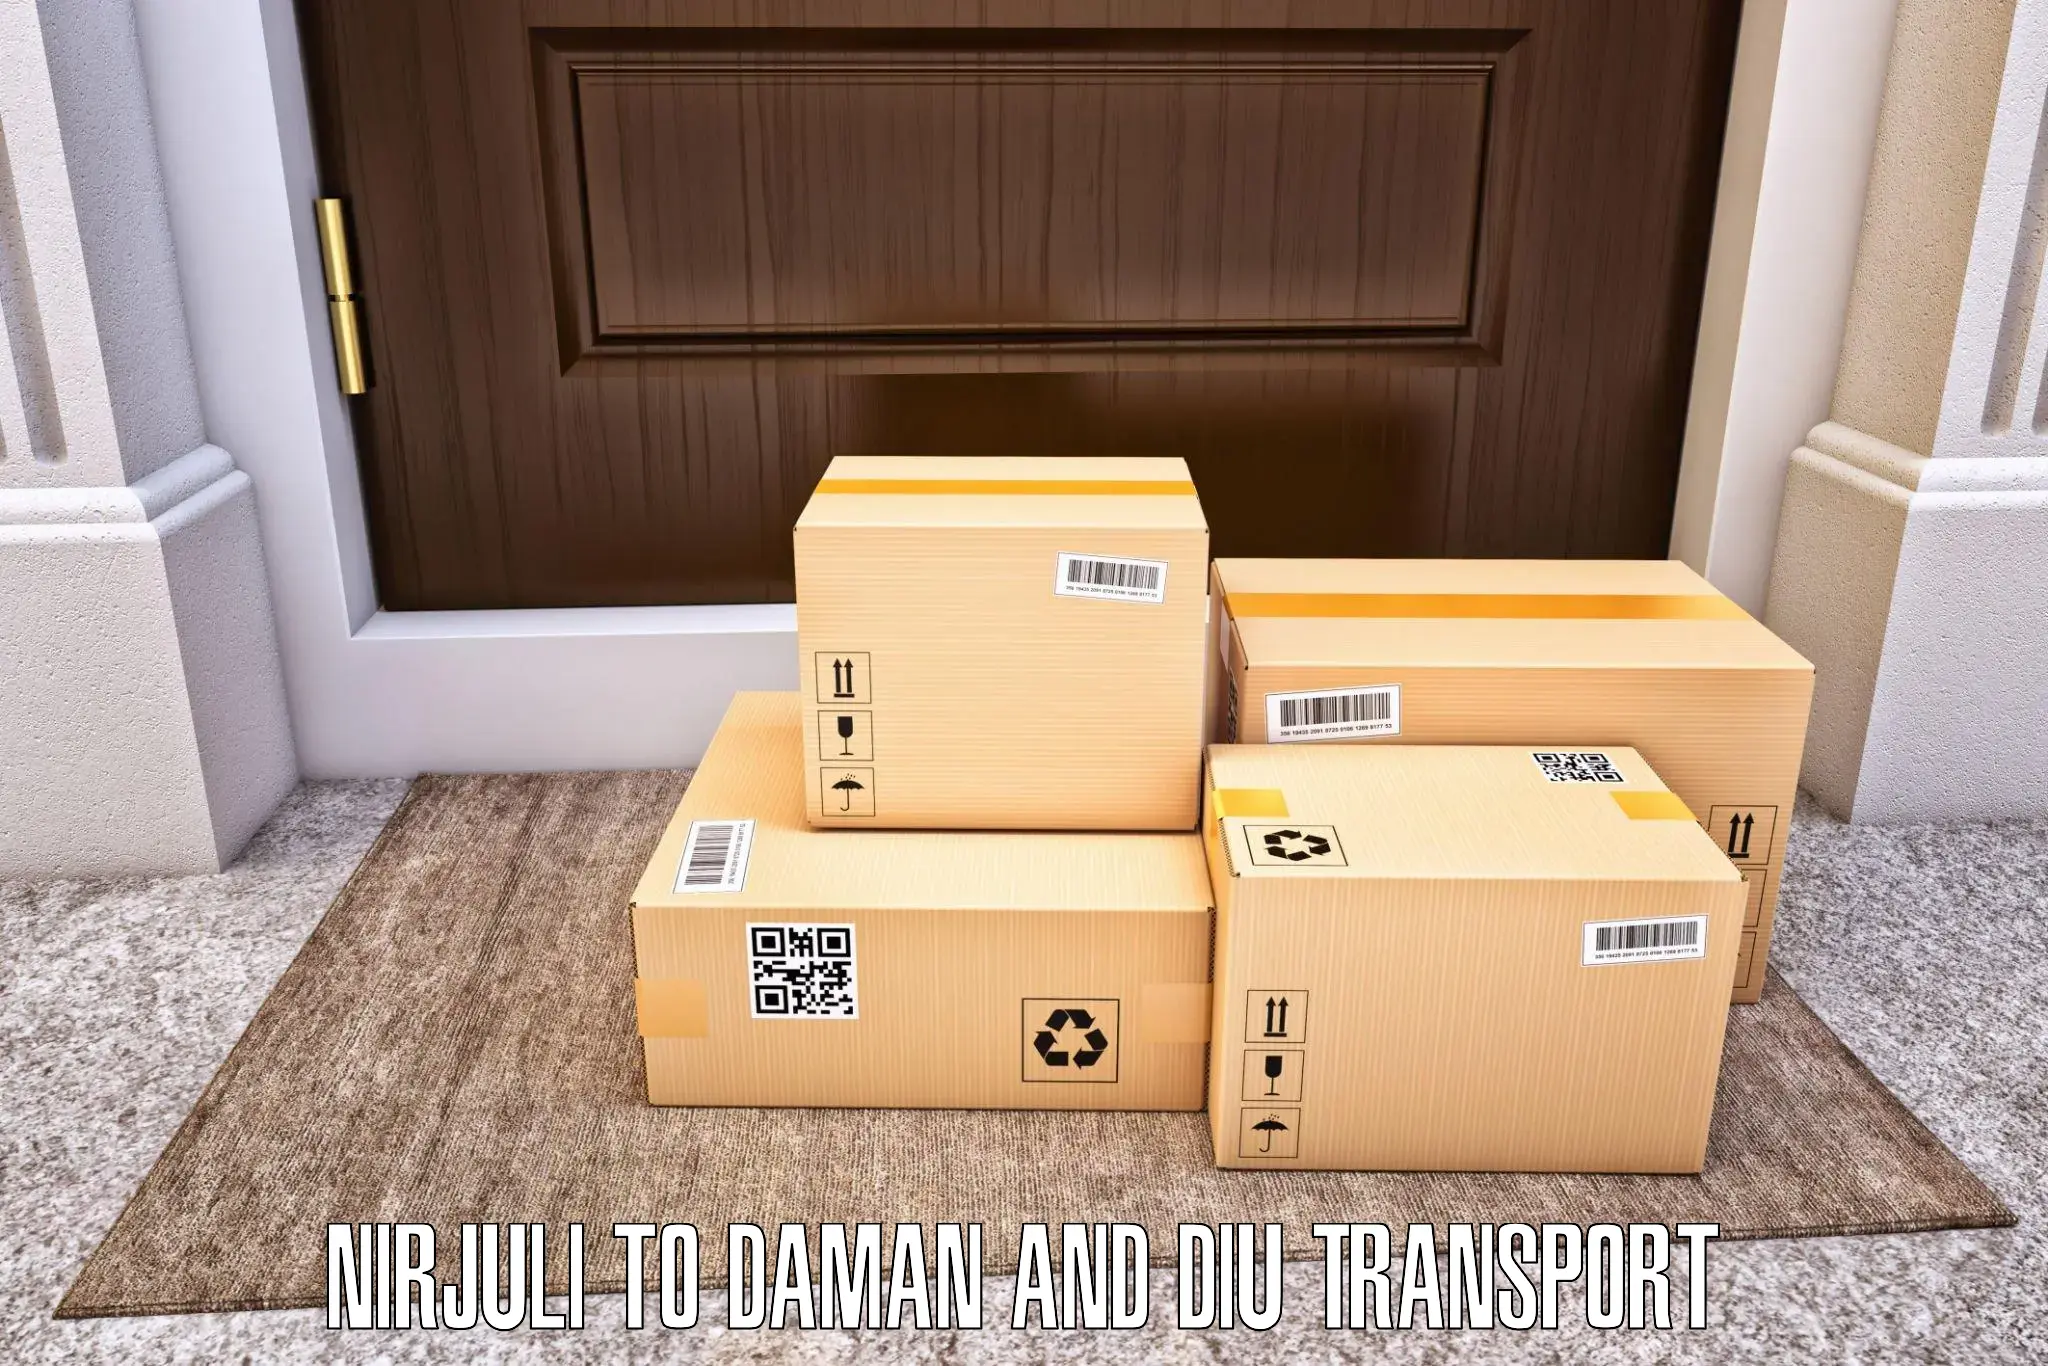 Furniture transport service Nirjuli to Diu